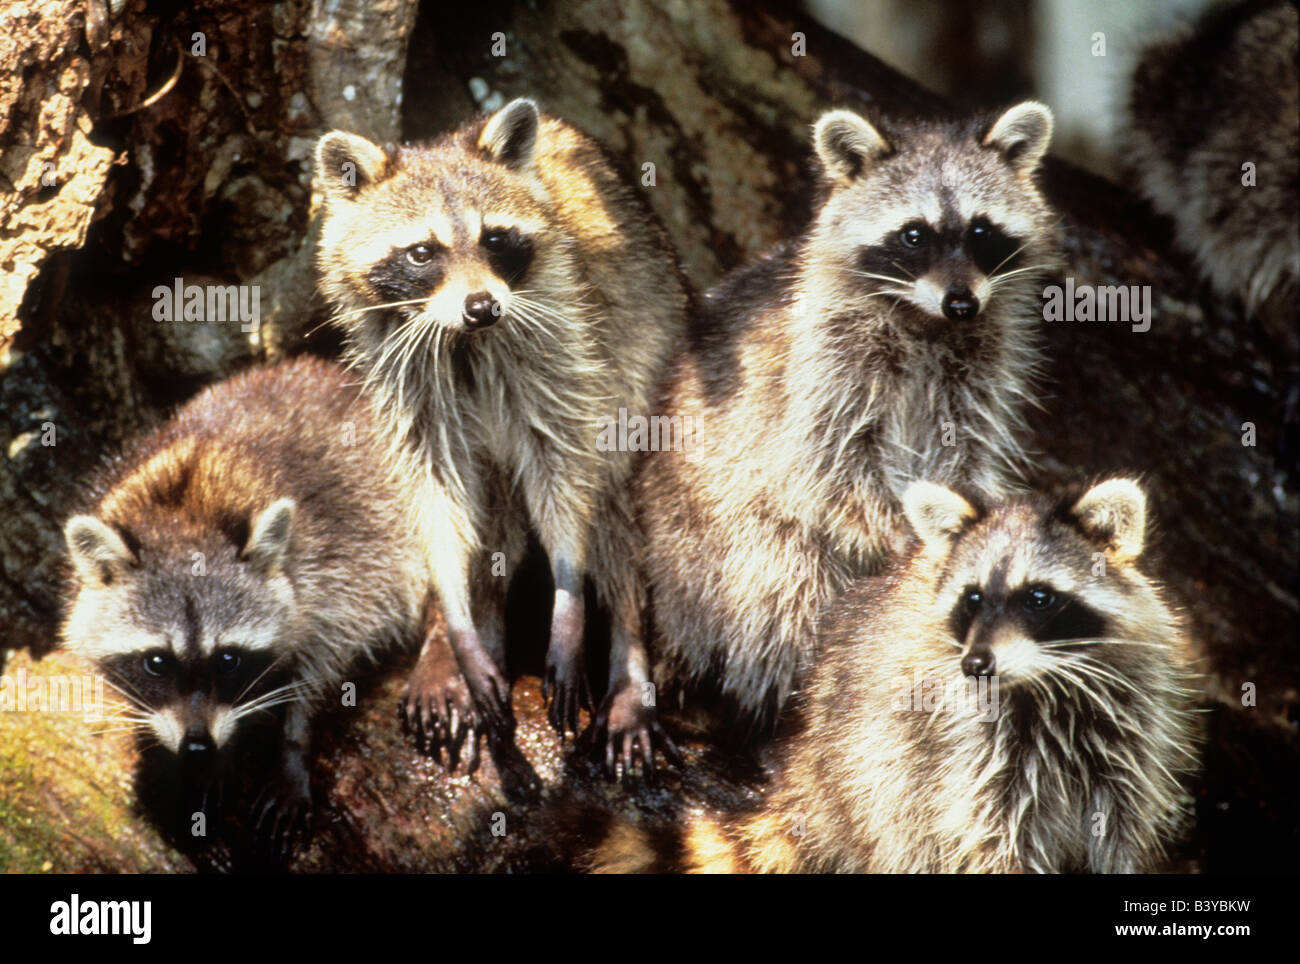 USA, Floride, Silver Springs. Portrait de famille de ratons laveurs. Banque D'Images